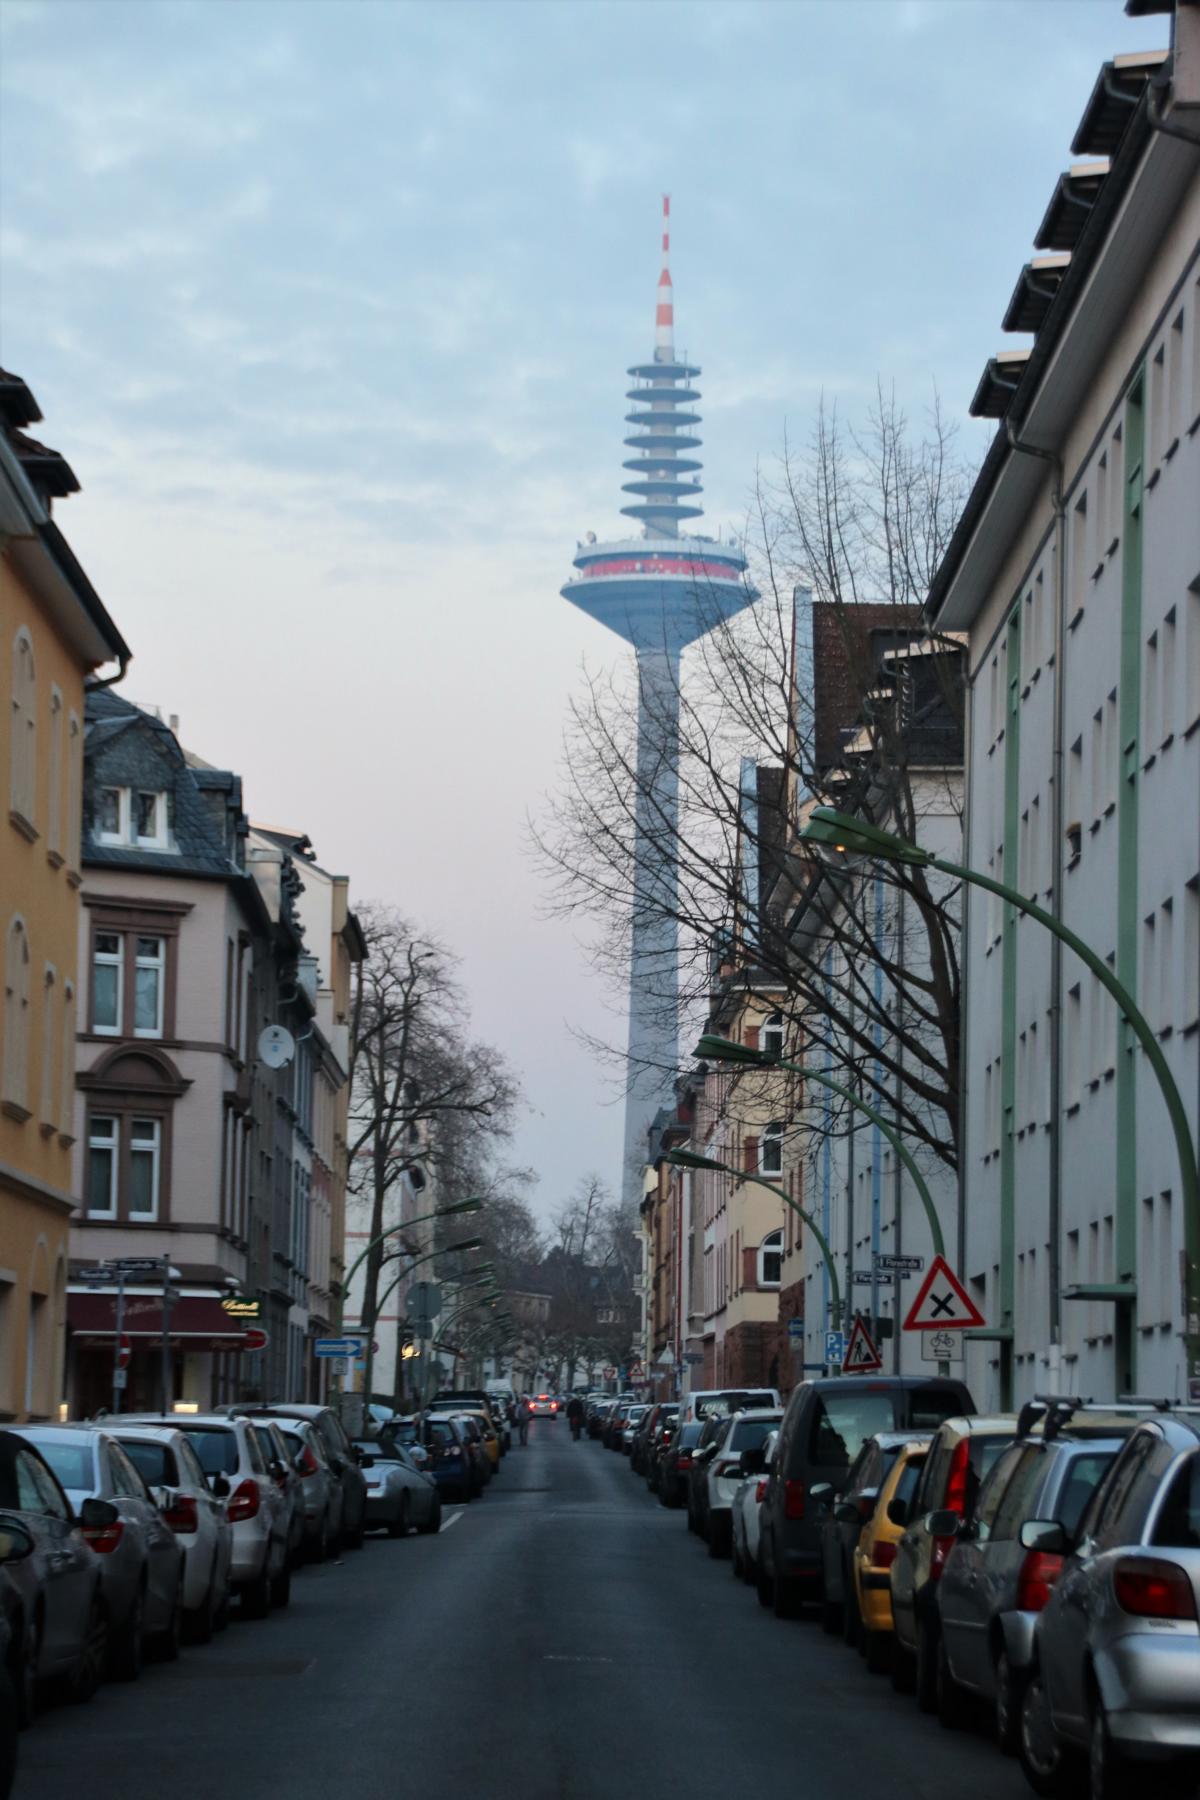 Straenzug in Bockenheim mit Blick zum Ginnheimer Spargel (Turm)< >